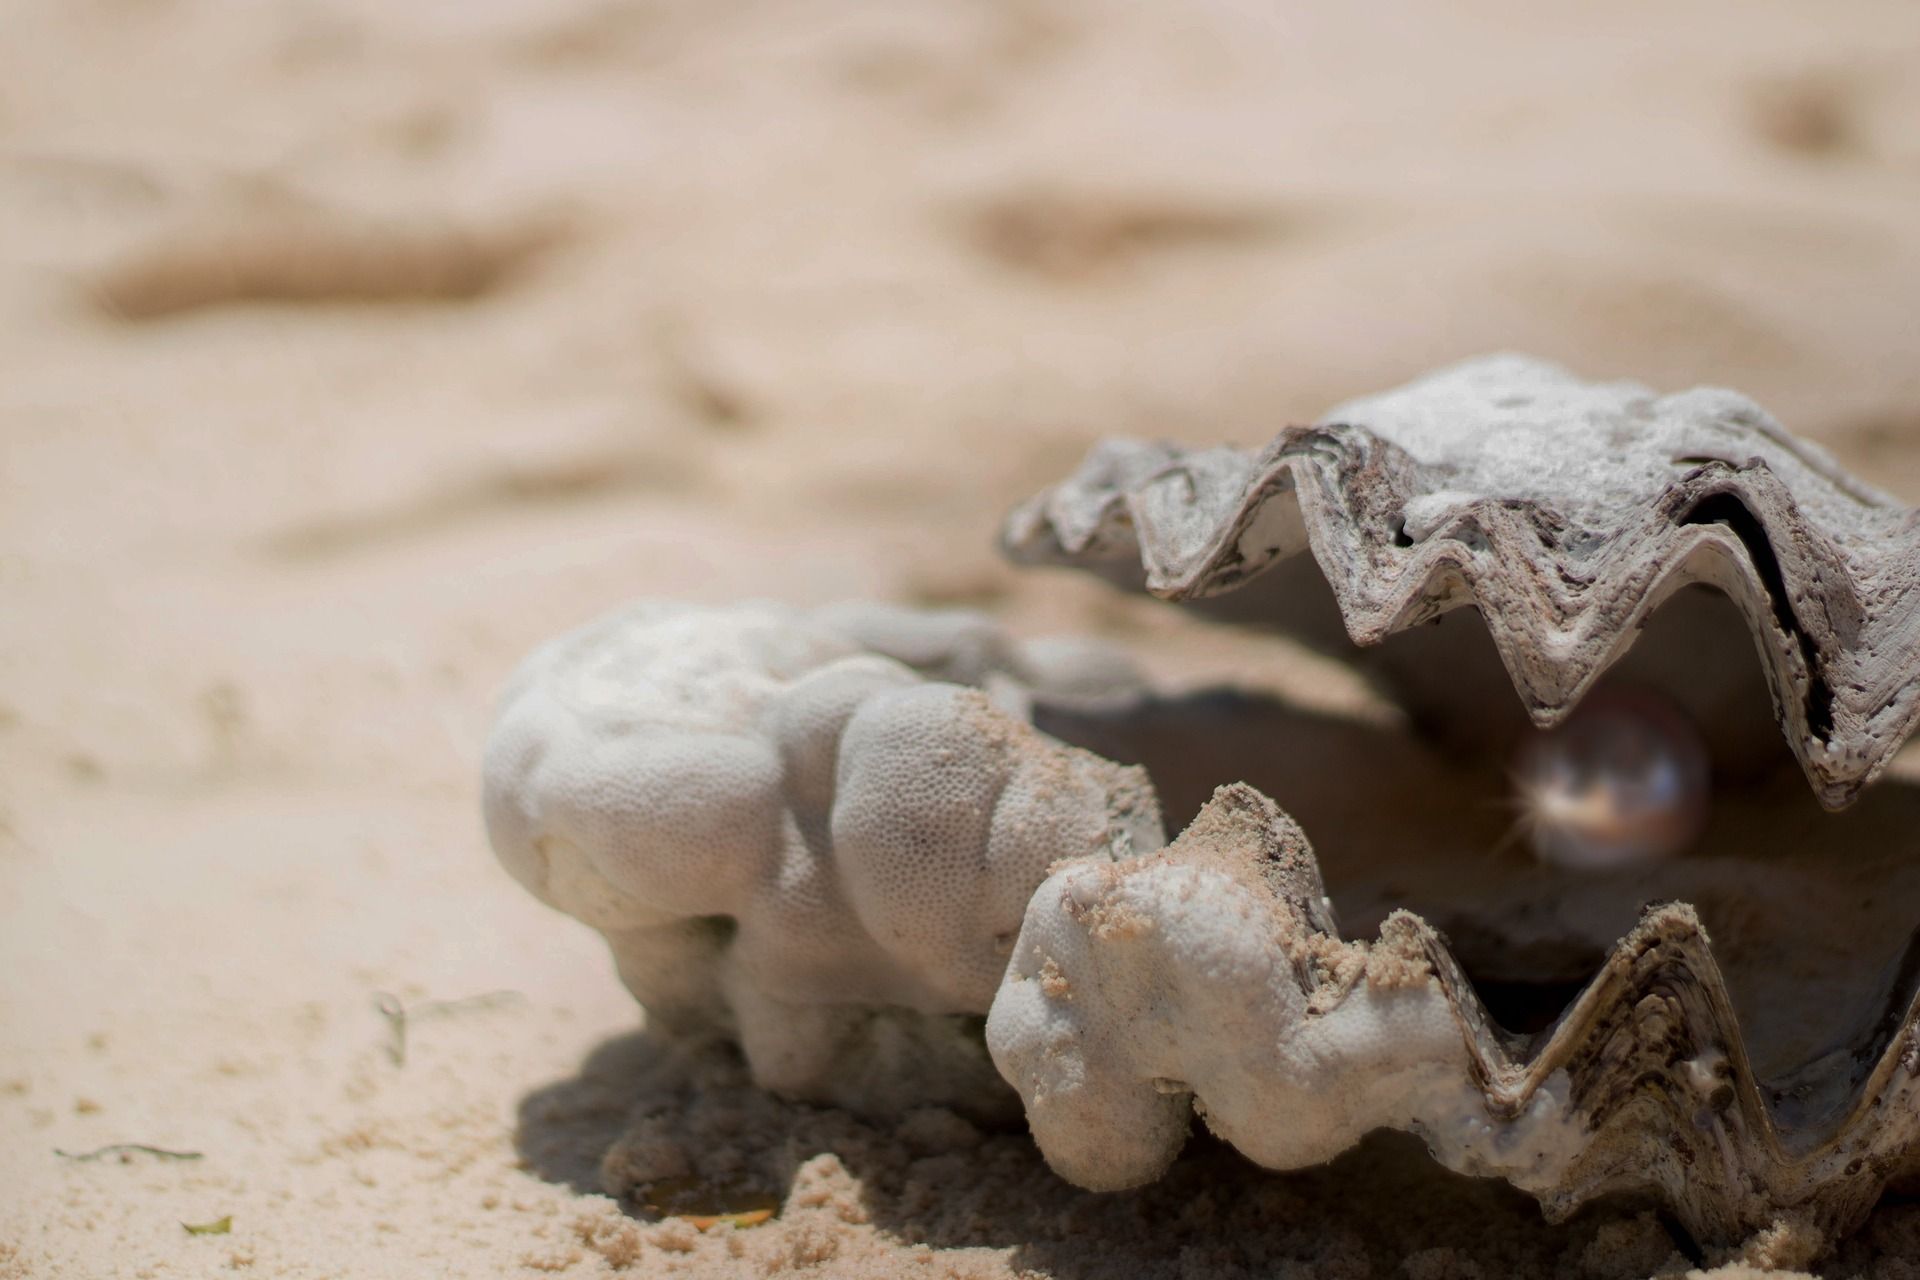 une huitre entrouverte laisse apparaître une perle - Image par Schäferle de https://pixabay.com/fr/photos/coquille-perle-pr%C3%A9cieux-lueur-1972980/